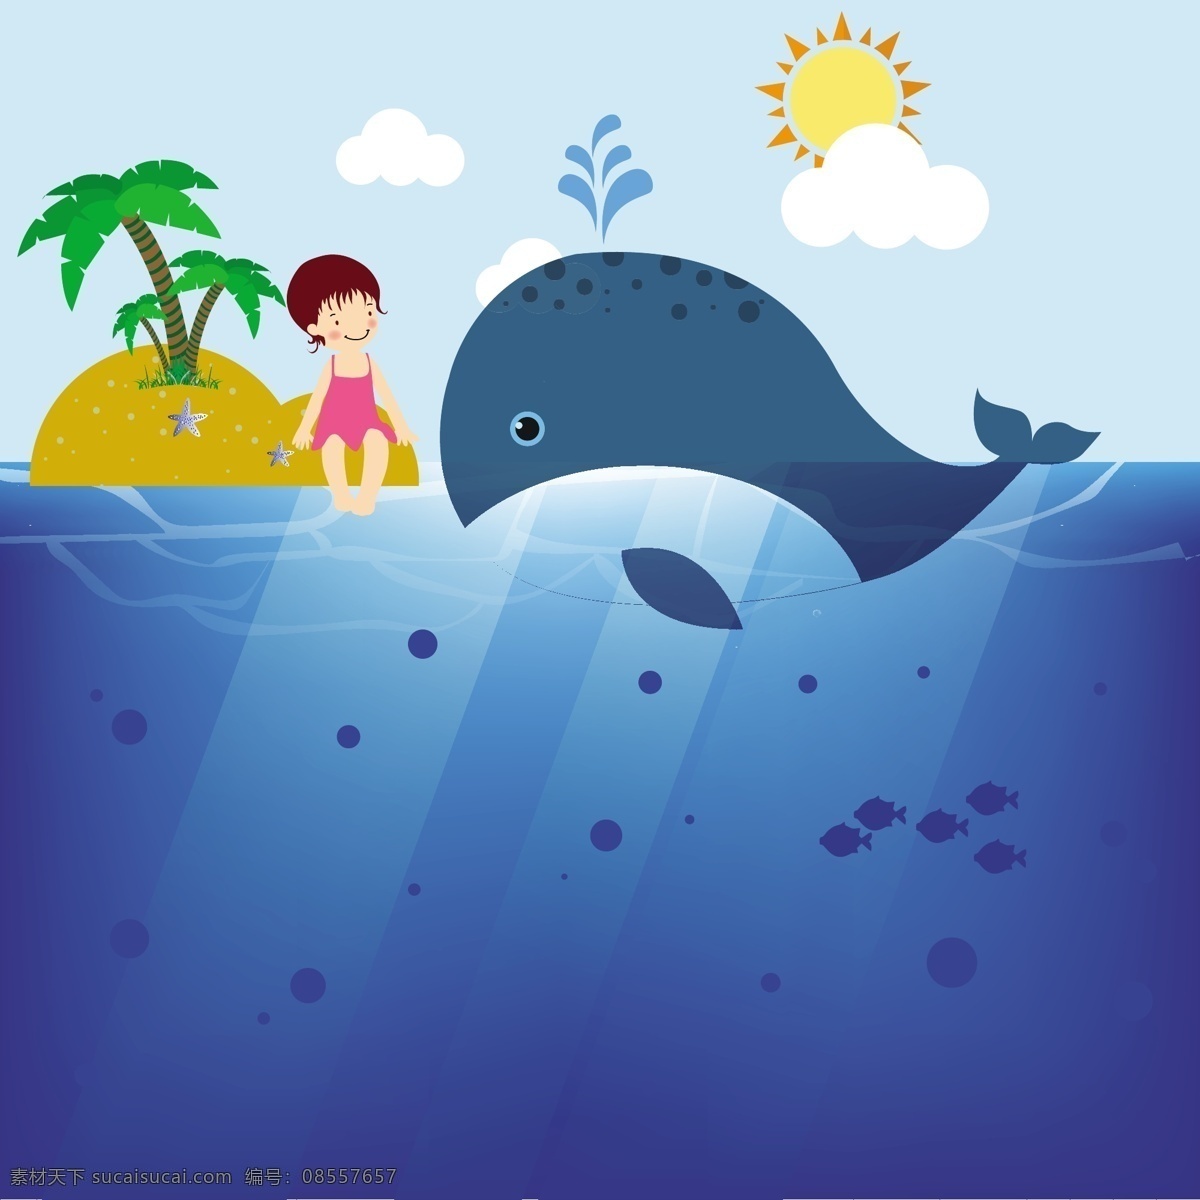 大 鲸鱼 小女孩 海洋 背景 背景素材 插画 扁平化 女孩 岛屿 椰树